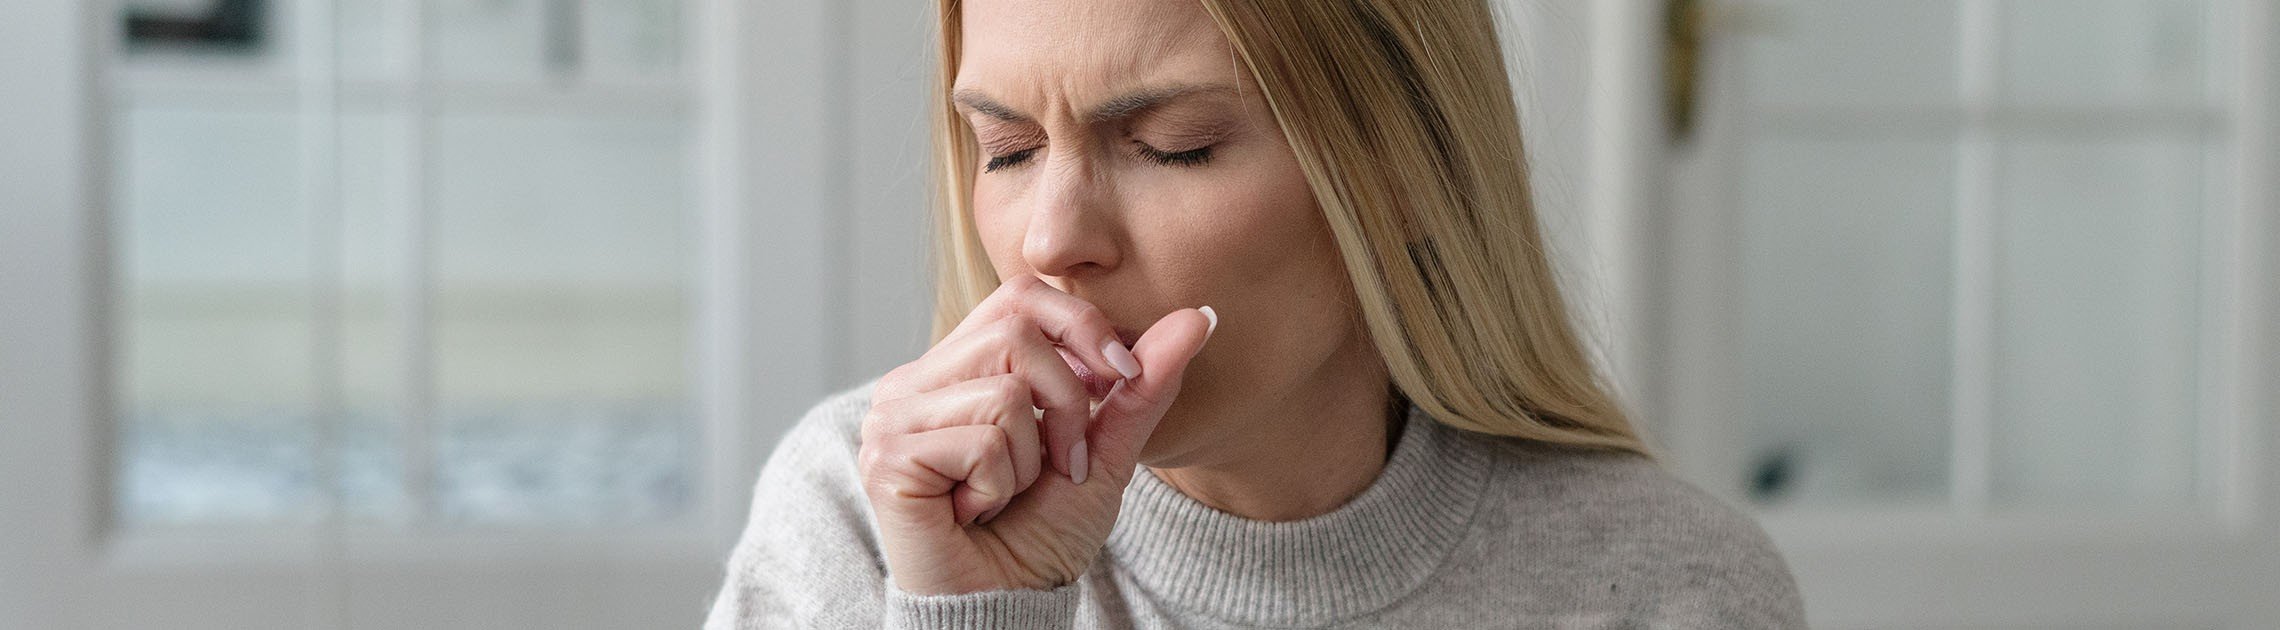 Guía perfecta de cómo cuidar tus pulmones tras una gripe